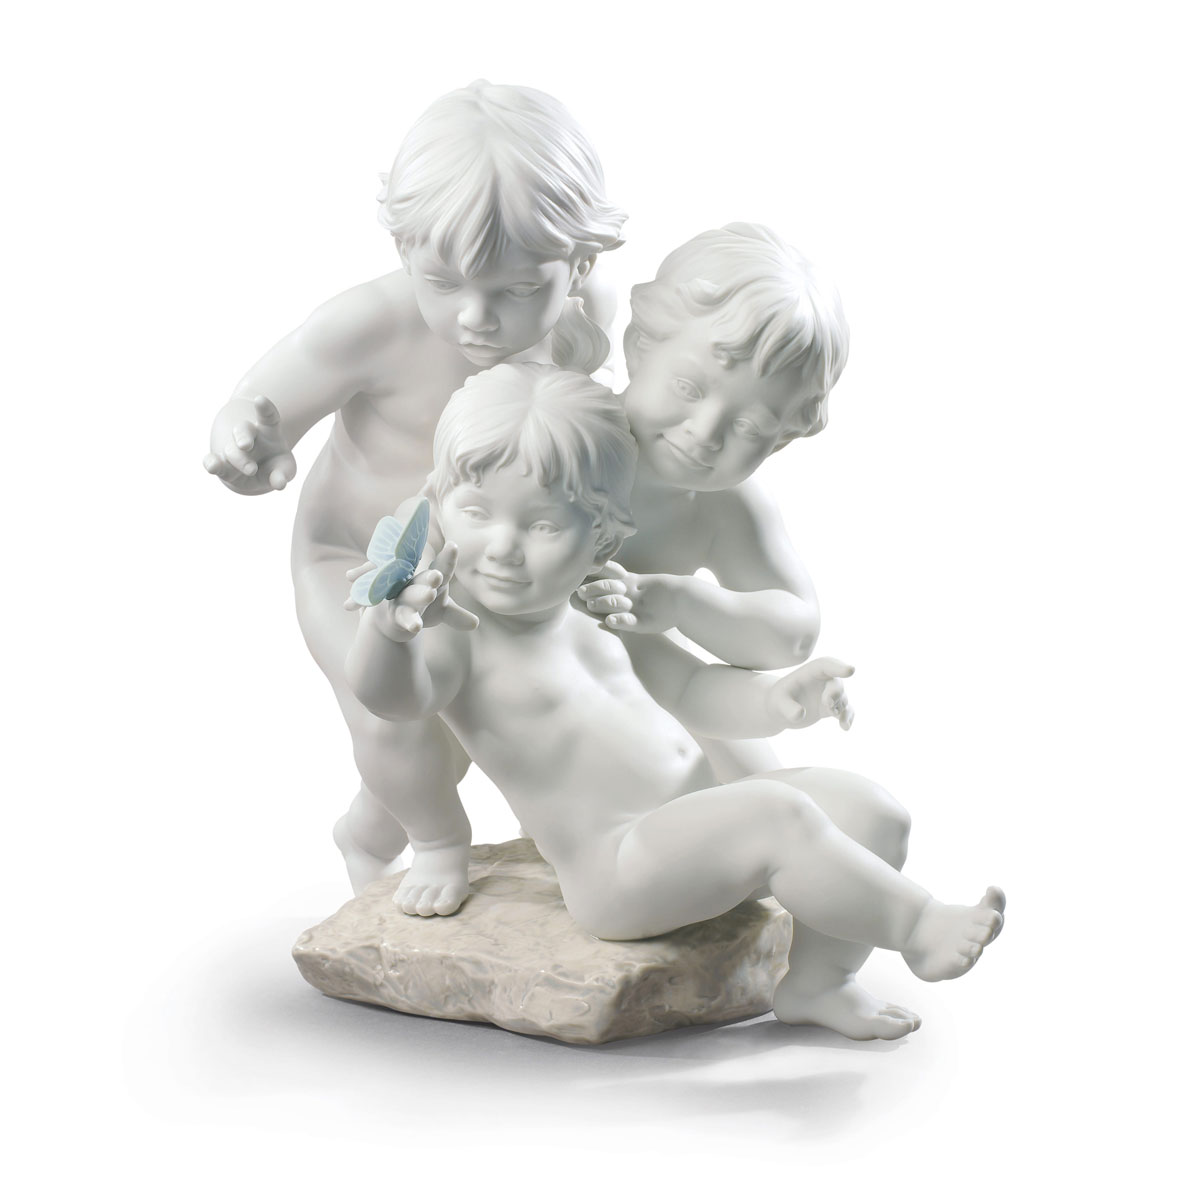 Lladro Classic Sculpture, Children's Curiosity Figurine